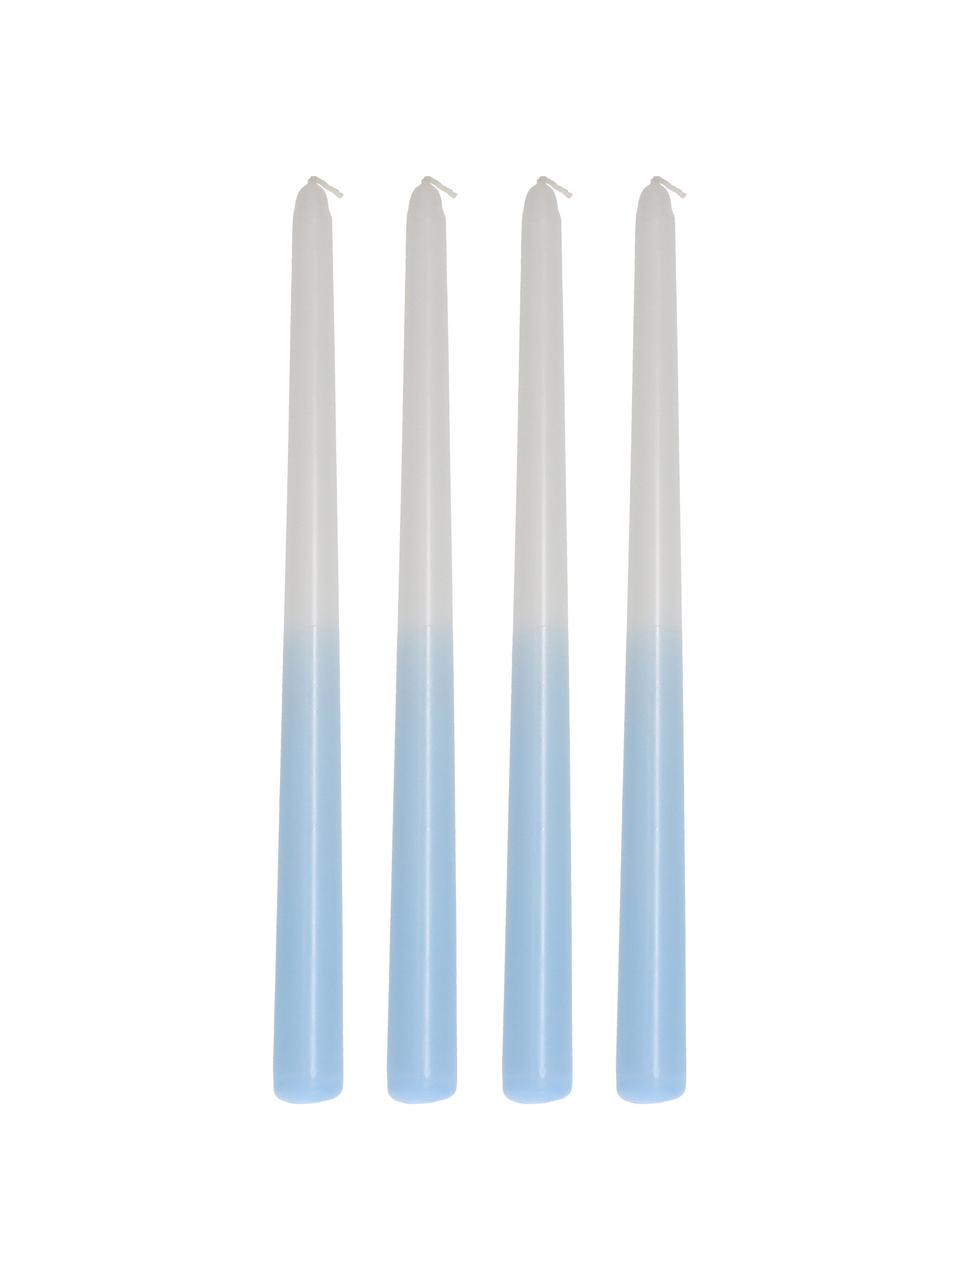 Stabkerzen Dubli in Hellblau/Weiß, 4 Stück, Wachs, Blau, Weiß, Ø 2 x H 31 cm